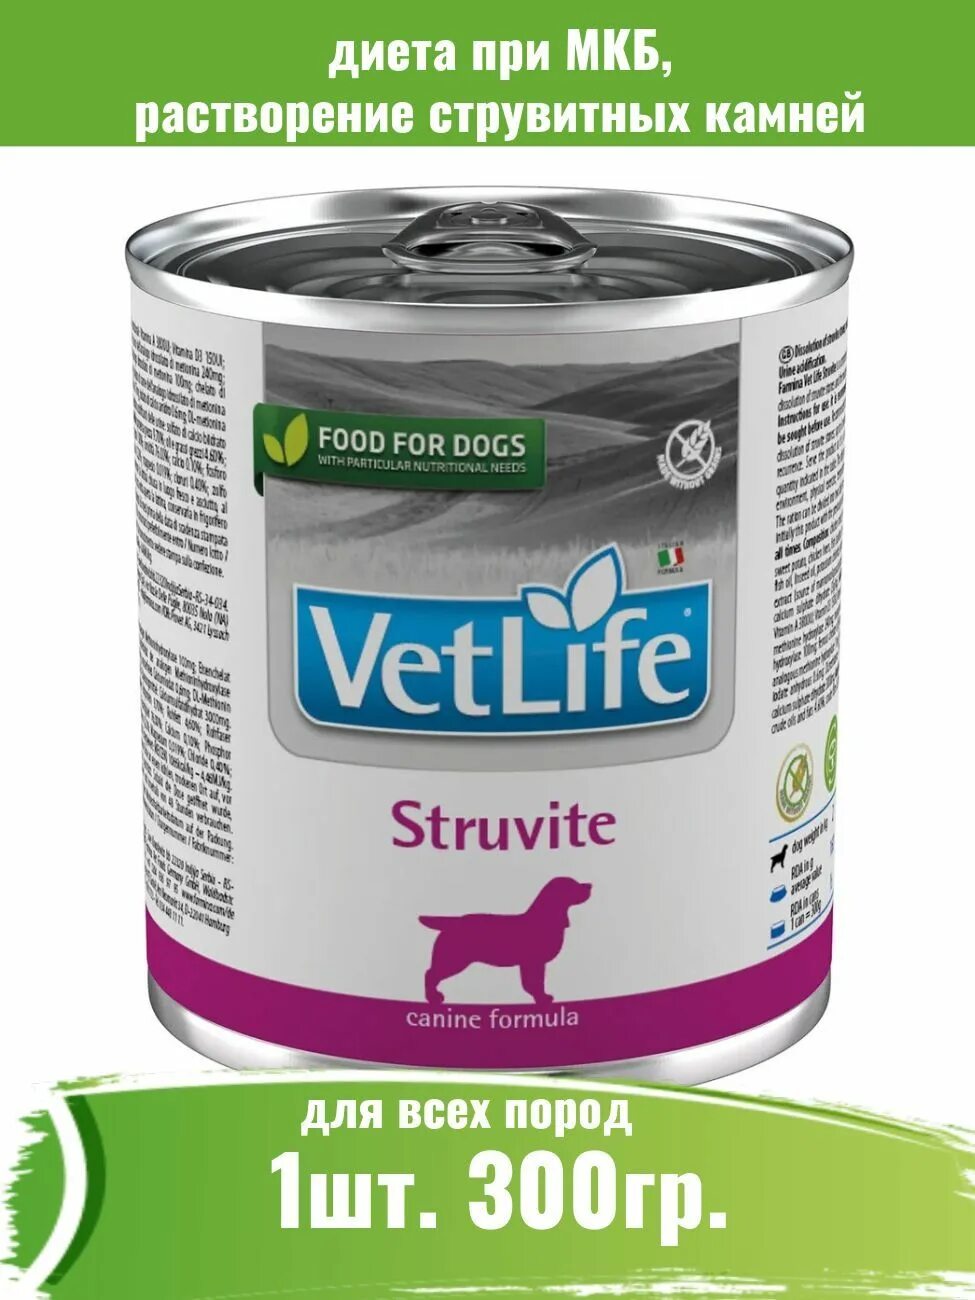 Vet Life Hypoallergenic консервы для собак. Консервы для собак vet Life. Паштет Gastro intestinal для собак. Farmina vet Life Hypoallergenic для собак консервы.